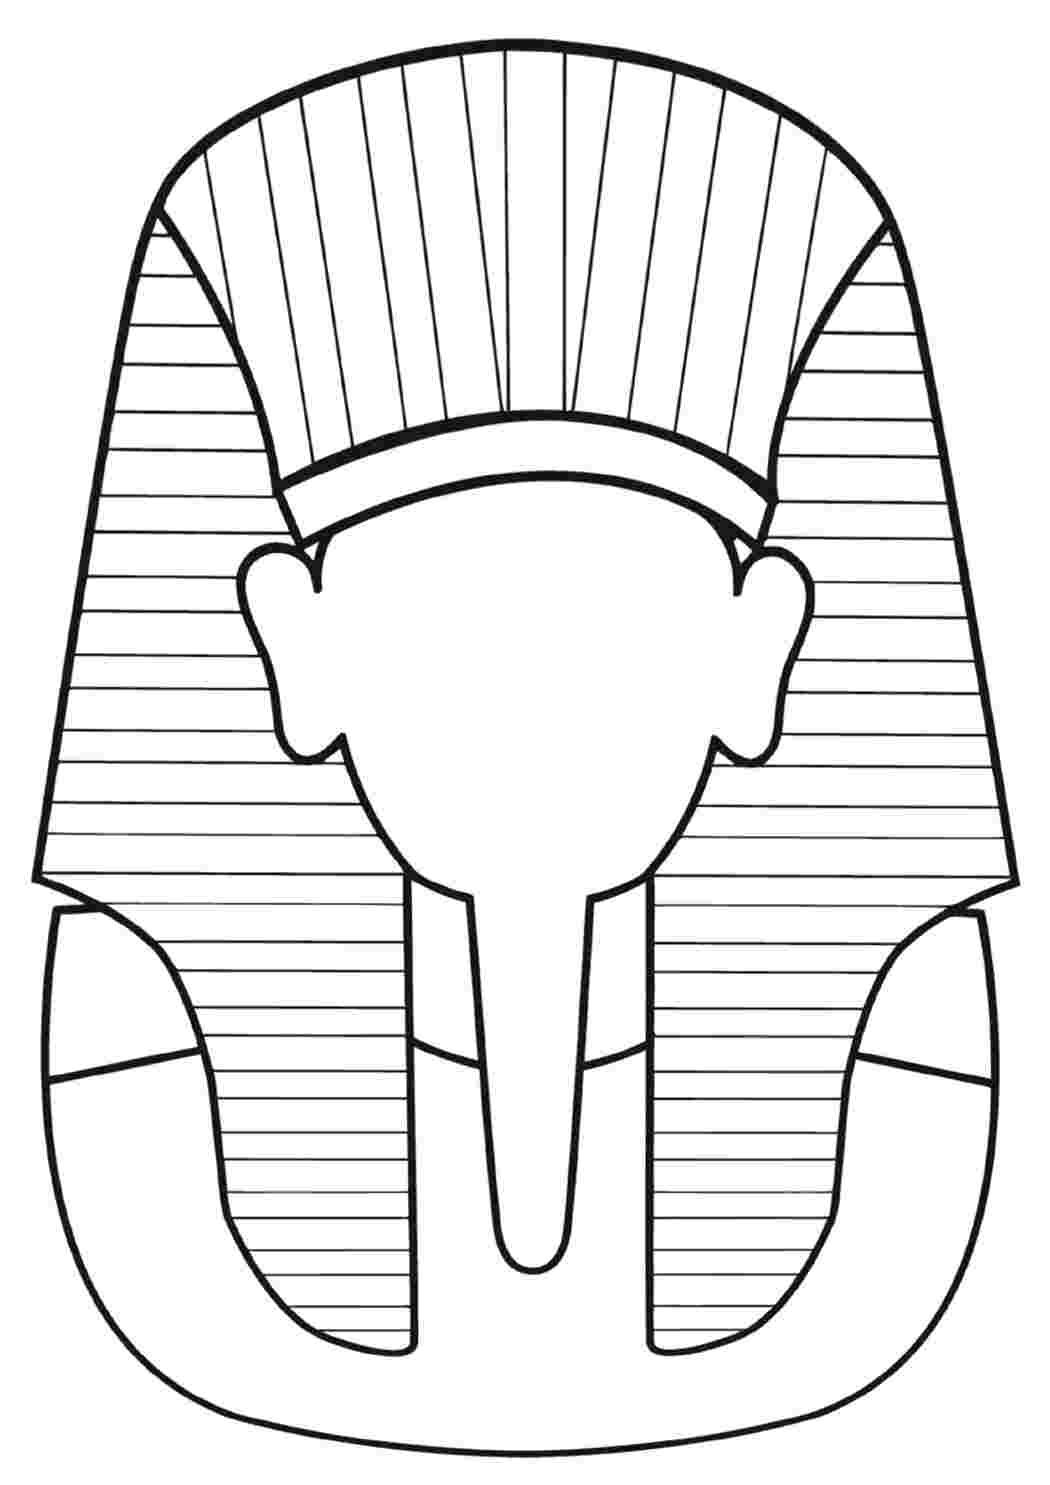 Маска фараона рисунок 5. Маска фараона Тутанхамона изо 5. Головные уборы фараонов древнего Египта клафт. Клафт в древнем Египте. Фараон древнего Египта раскрашенный.